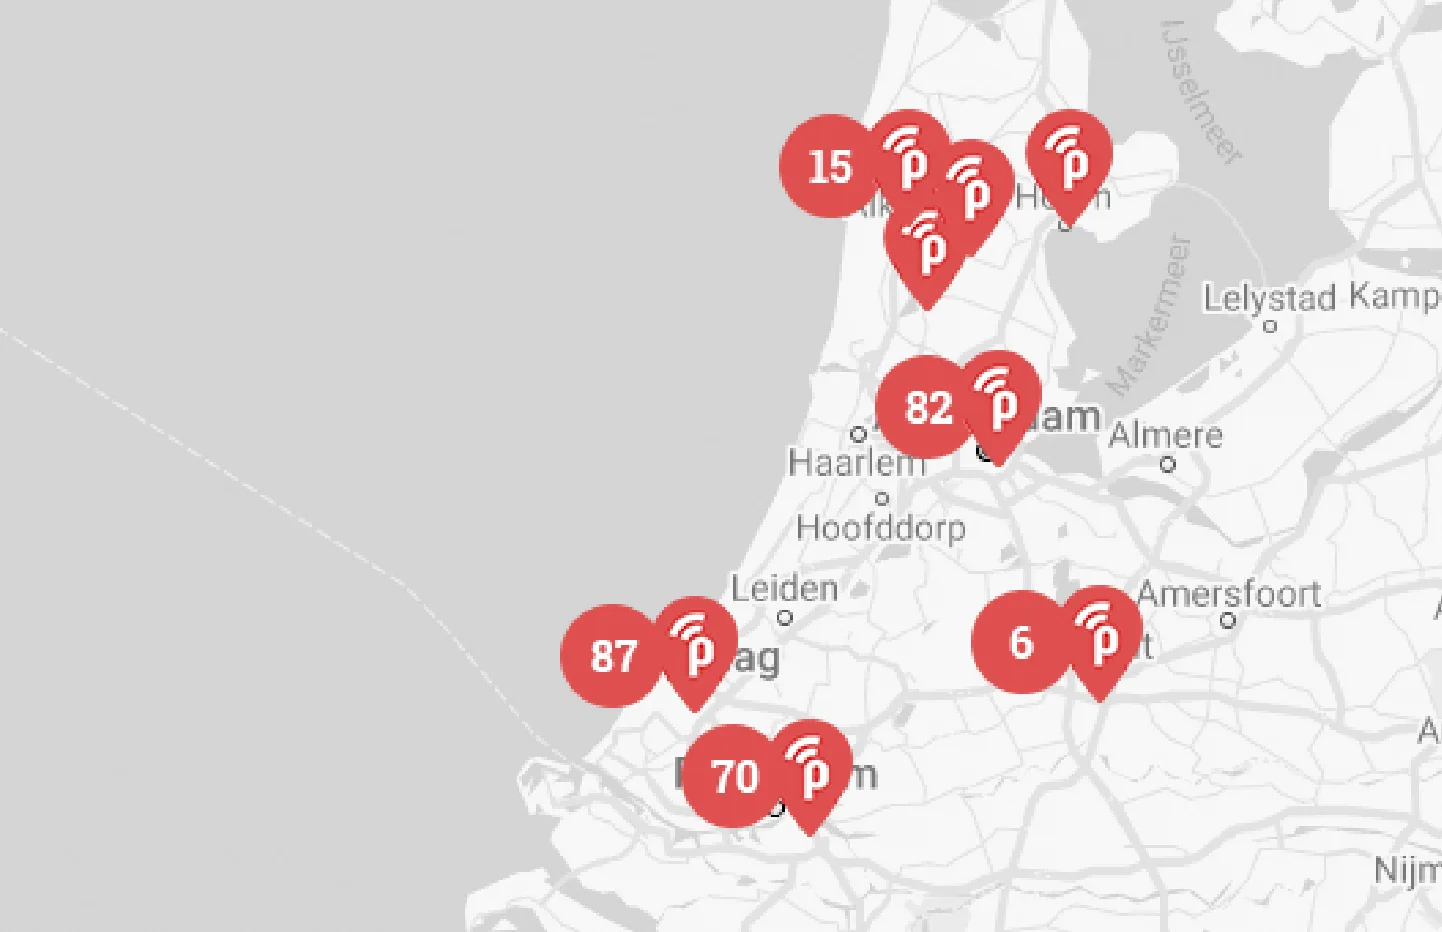 Kaart van Noord- en Zuid-Holland met de locaties waar publicroam beschikbaar is